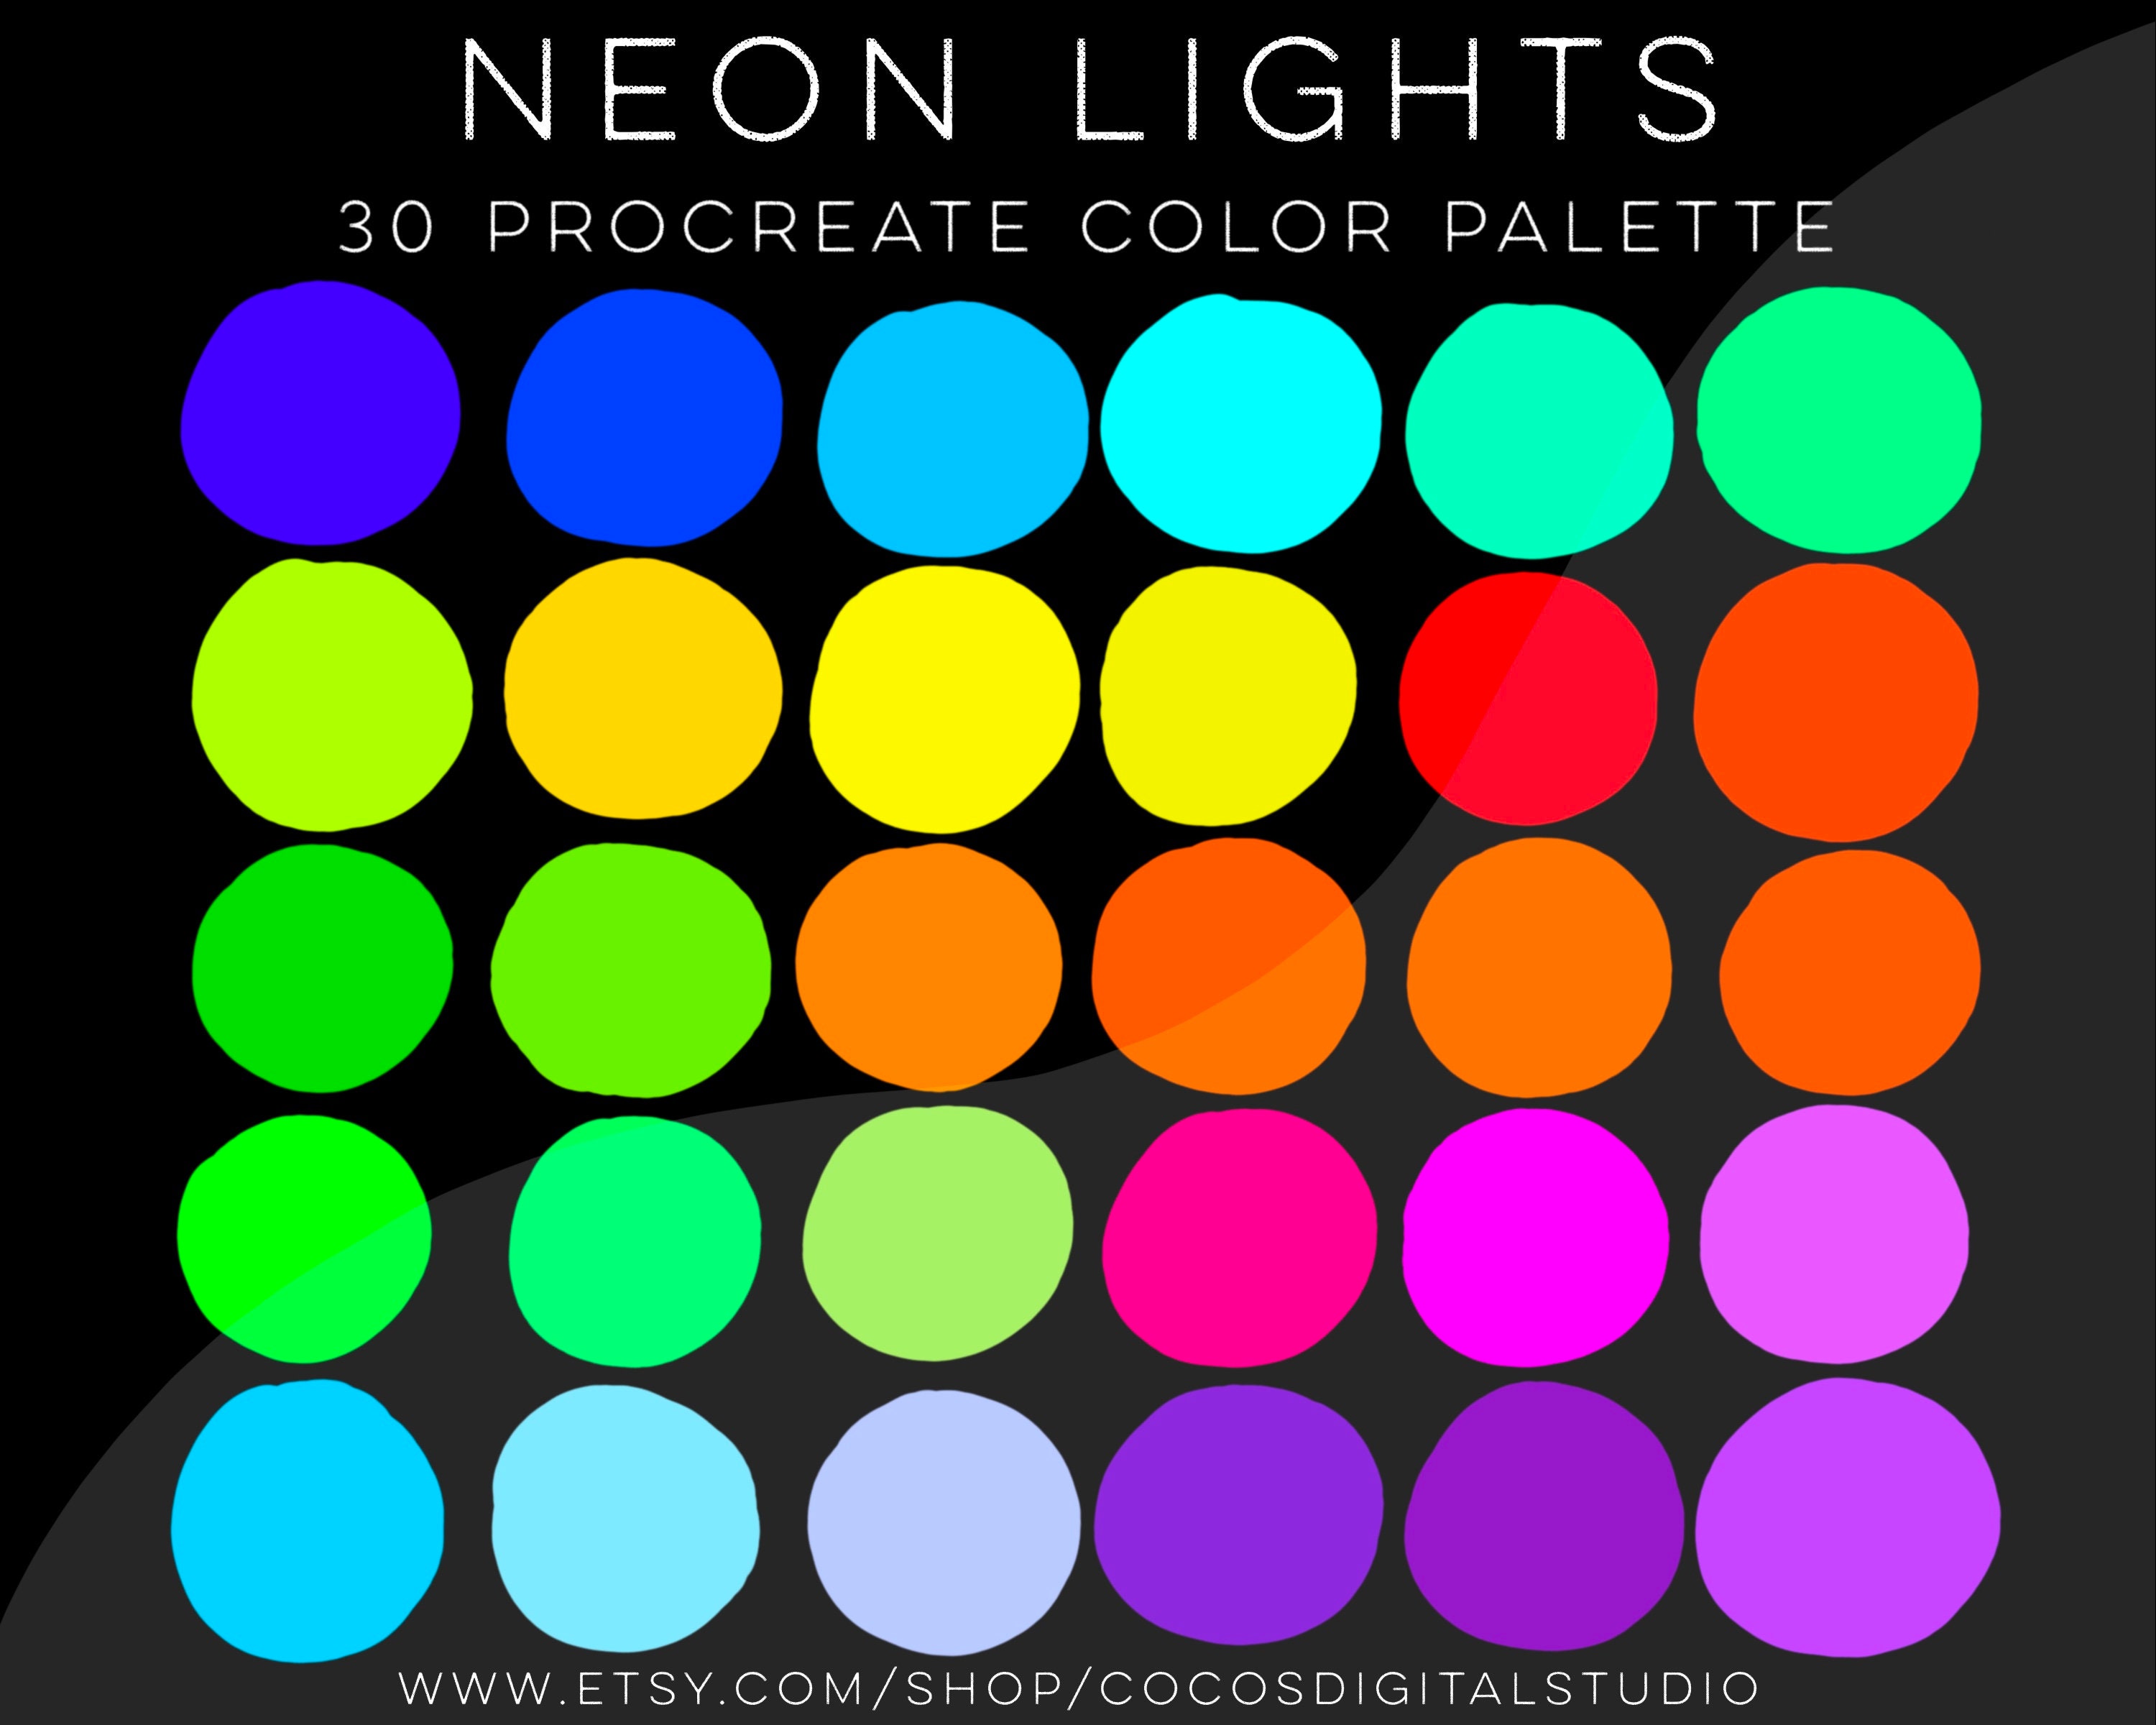 Neon Lights - Procreate Color Palette - Bright Neon Color Swatches -  Digital Swatches - Neon Colour Swatches - ipad illustration - ipad tool